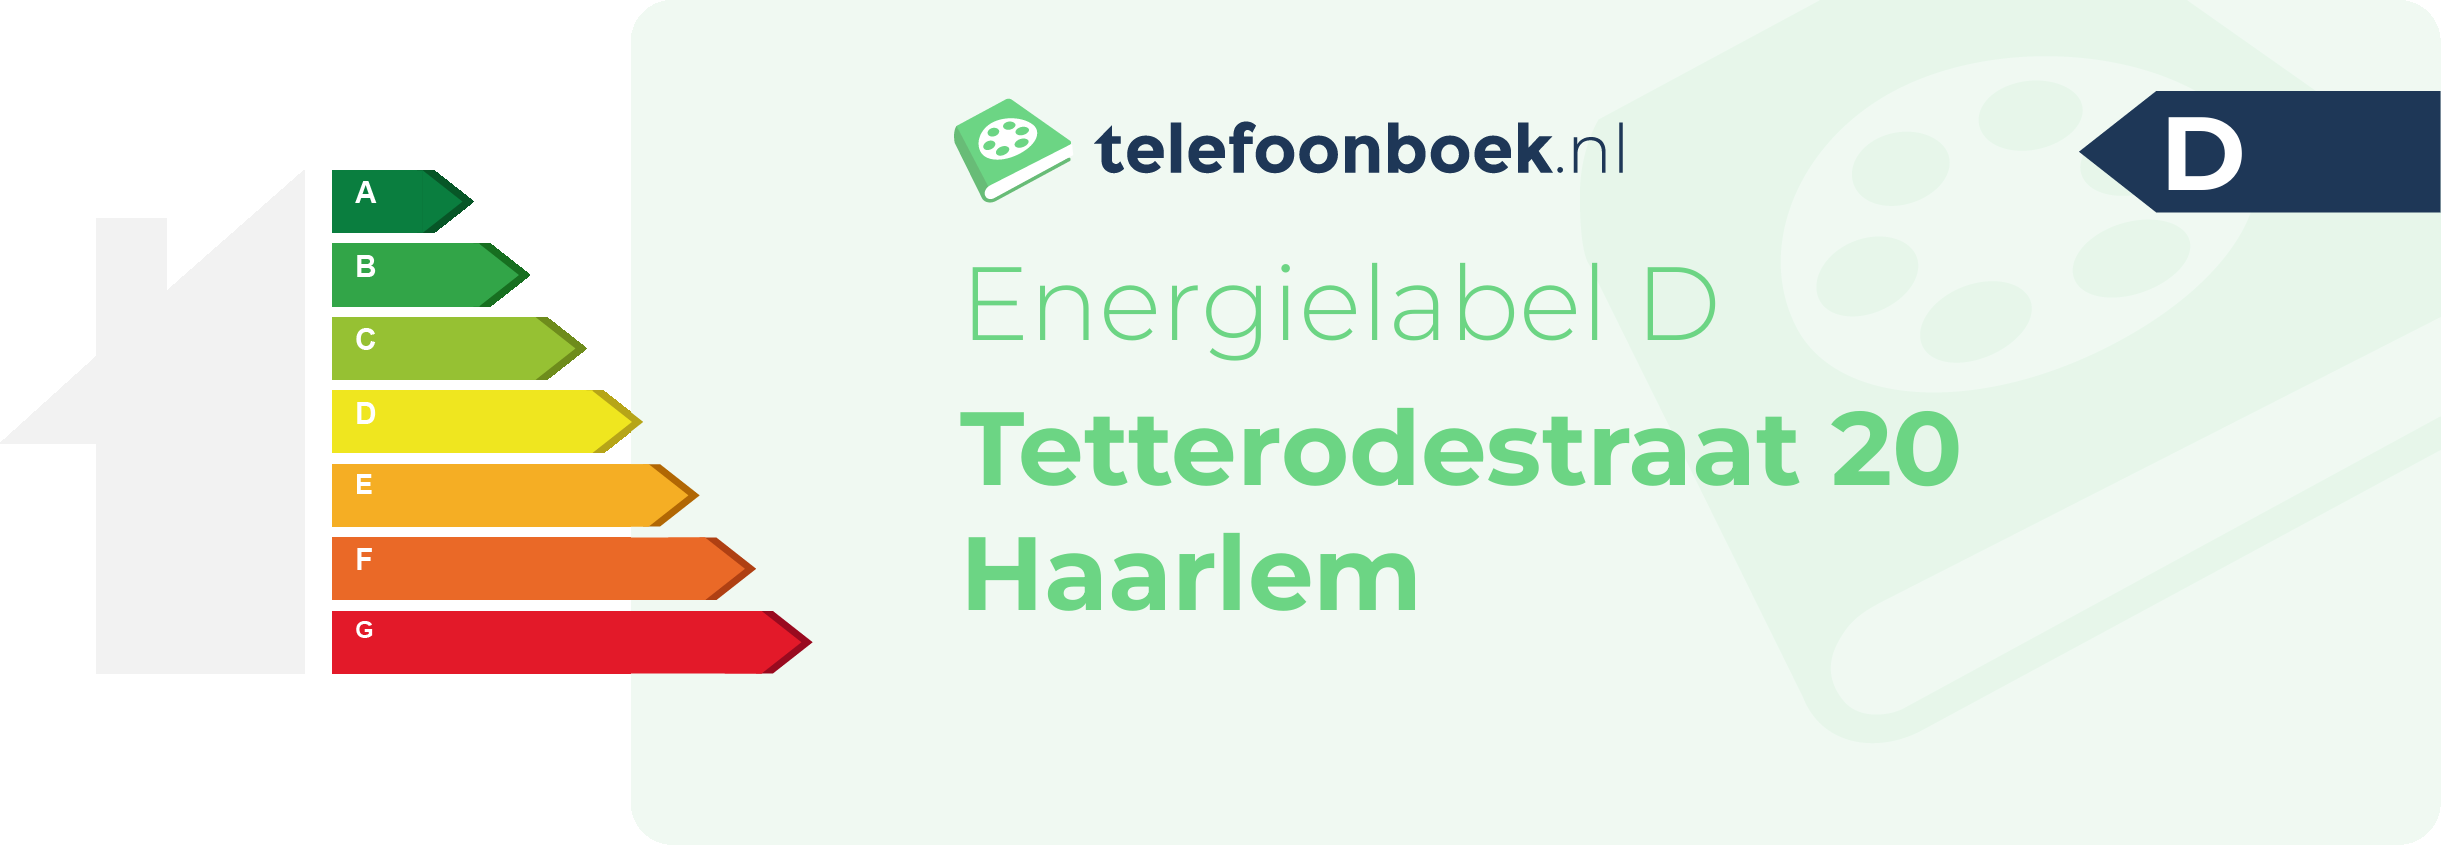 Energielabel Tetterodestraat 20 Haarlem